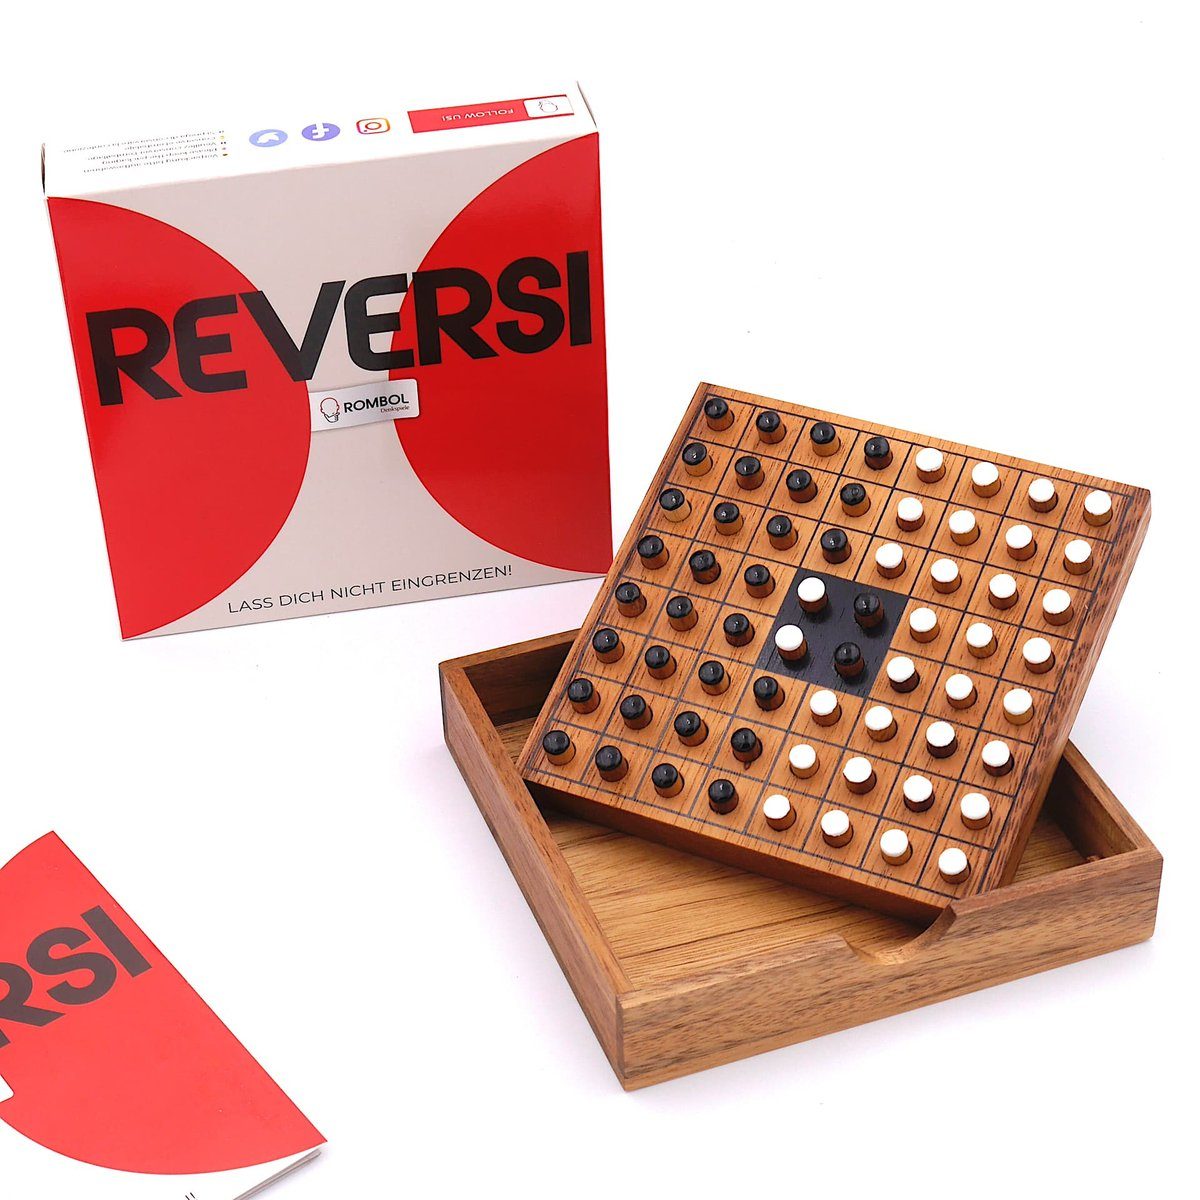 Reversi – Personen weiß/schwarz edlem Spiel, ROMBOL Brettspiel Holz, Denkspiele Interessantes aus für Strategiespiel Holzspiel 2